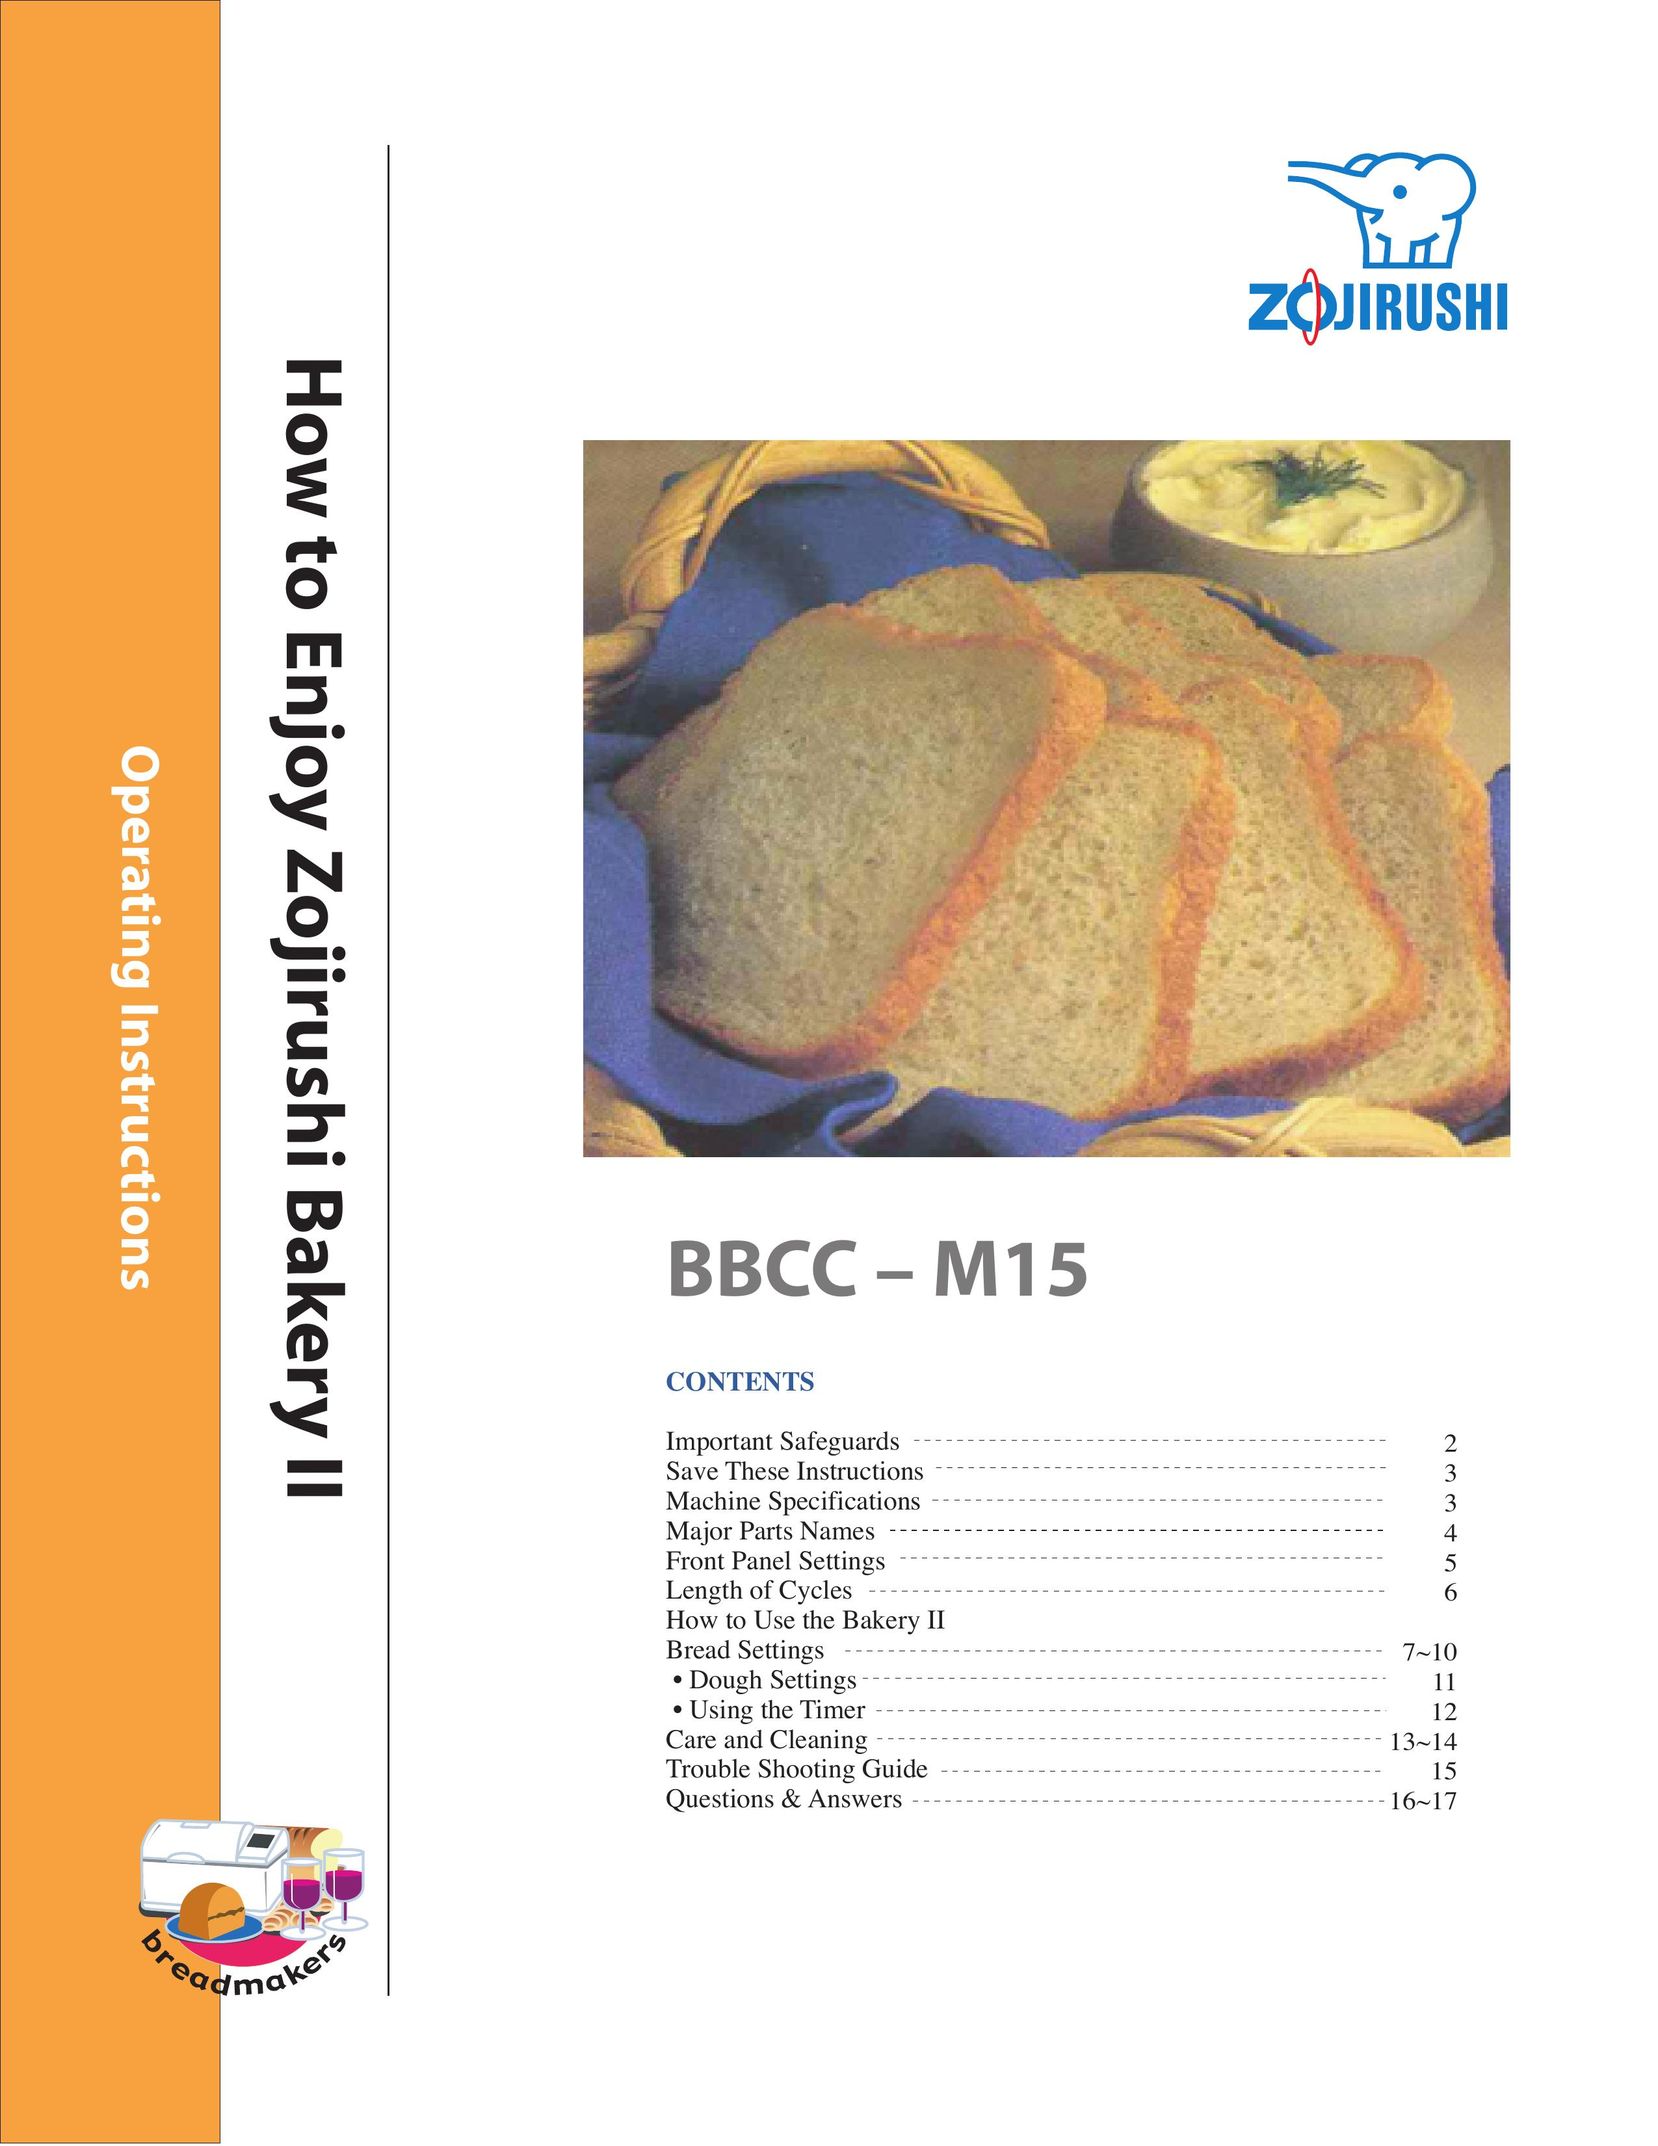 Zojirushi BBCC - M15 Bread Maker User Manual